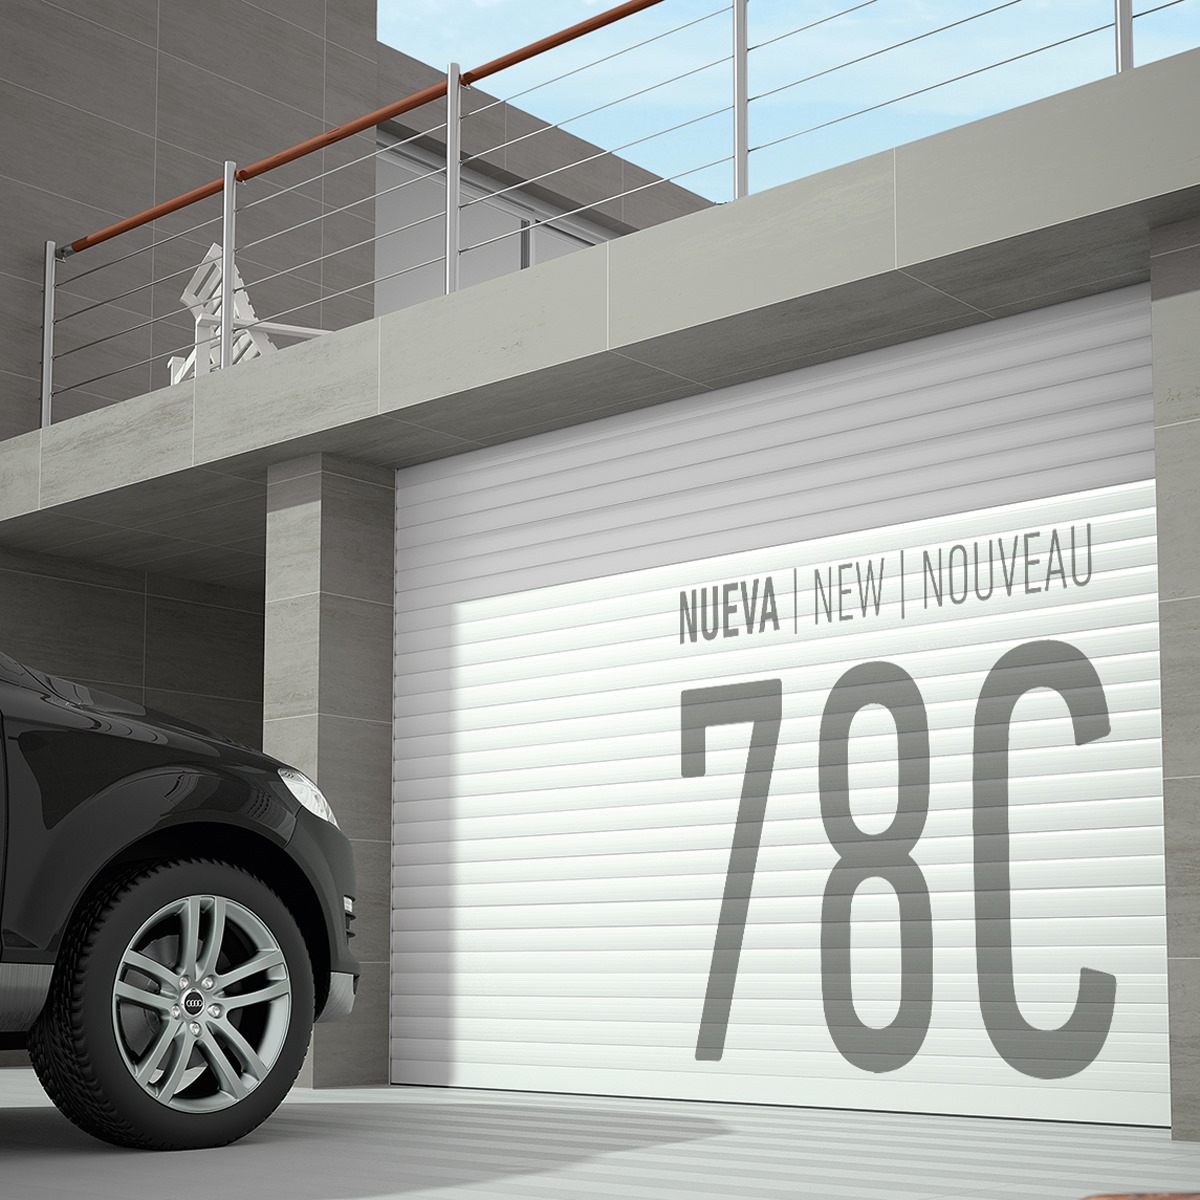 Luxe Perfil presenta la nueva lama de aluminio 78C